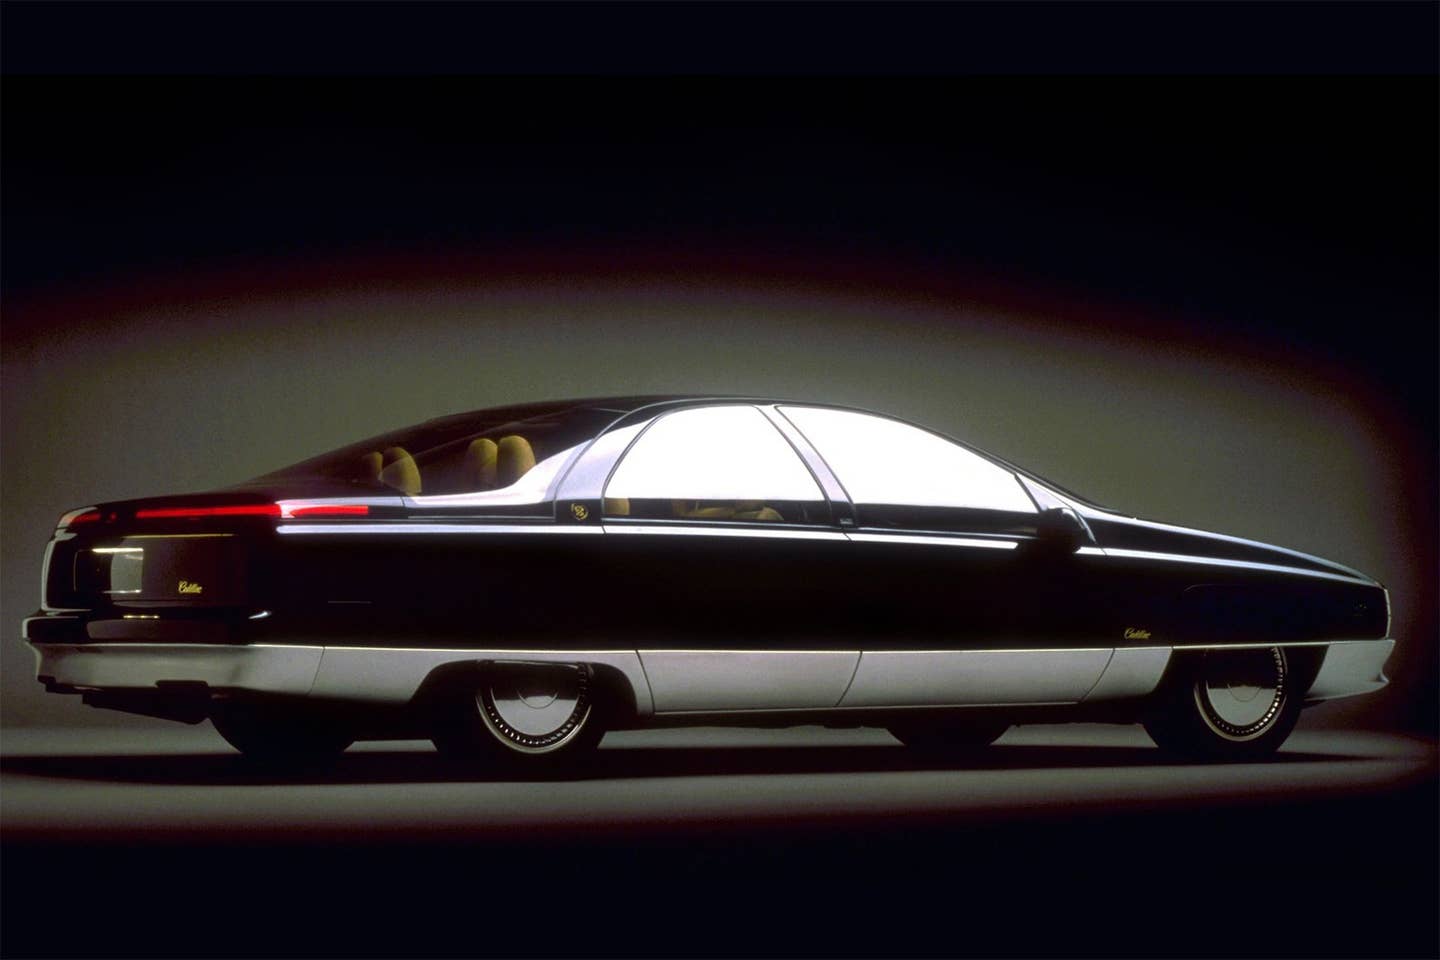 Cadillac Voyage 1988 concept